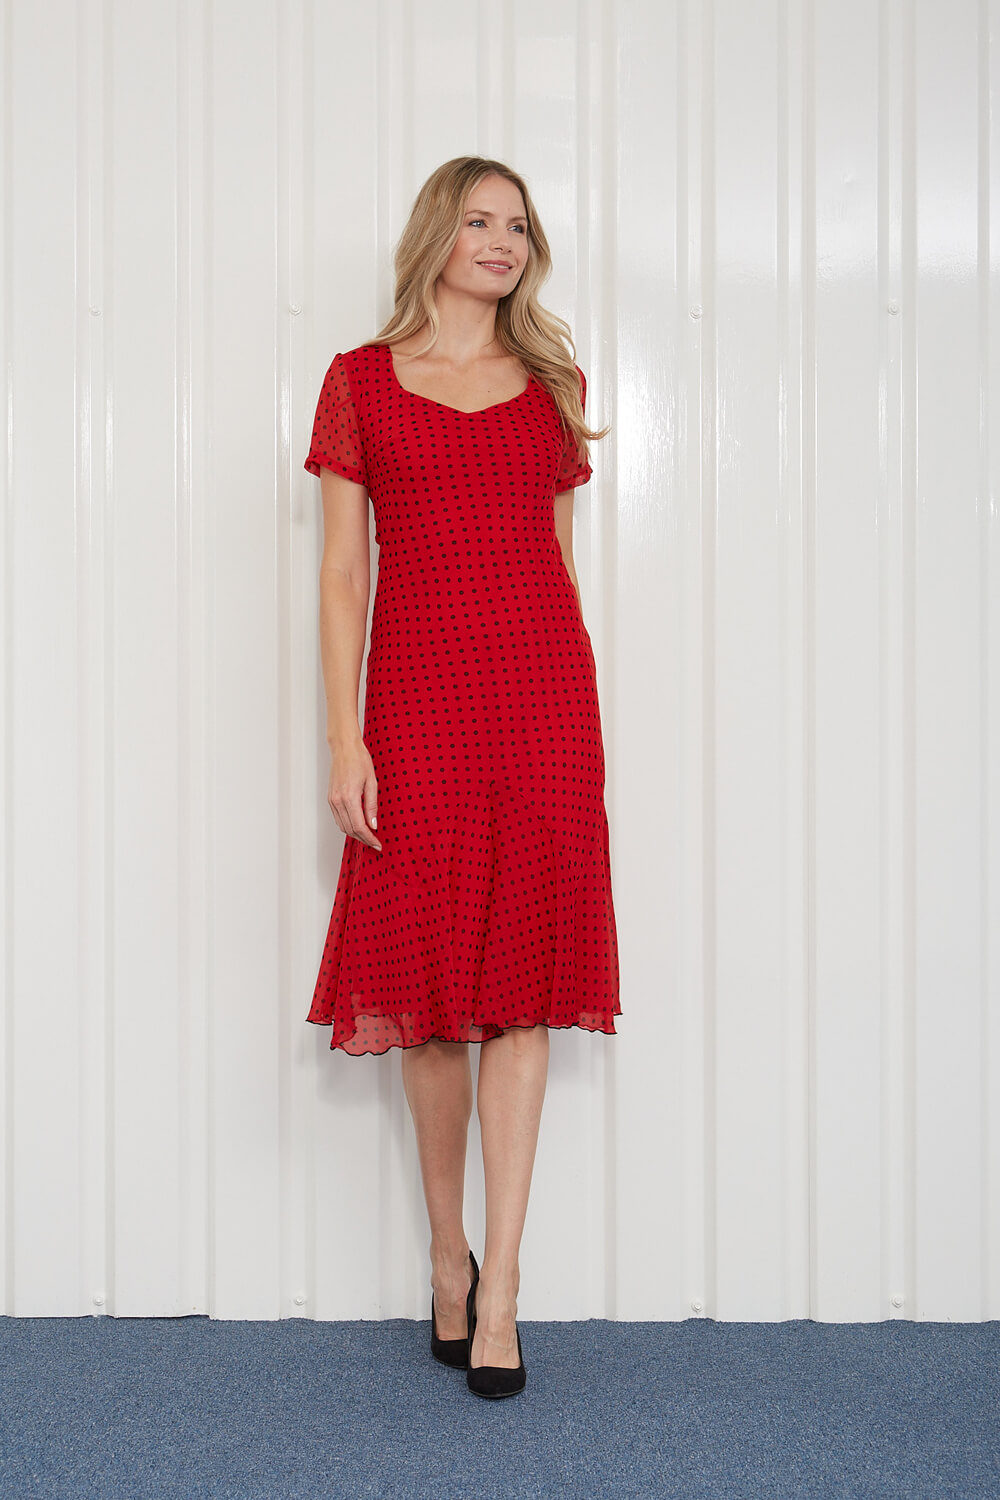 Scarlet Julianna Spot Print Chiffon Dress, Image 3 of 4